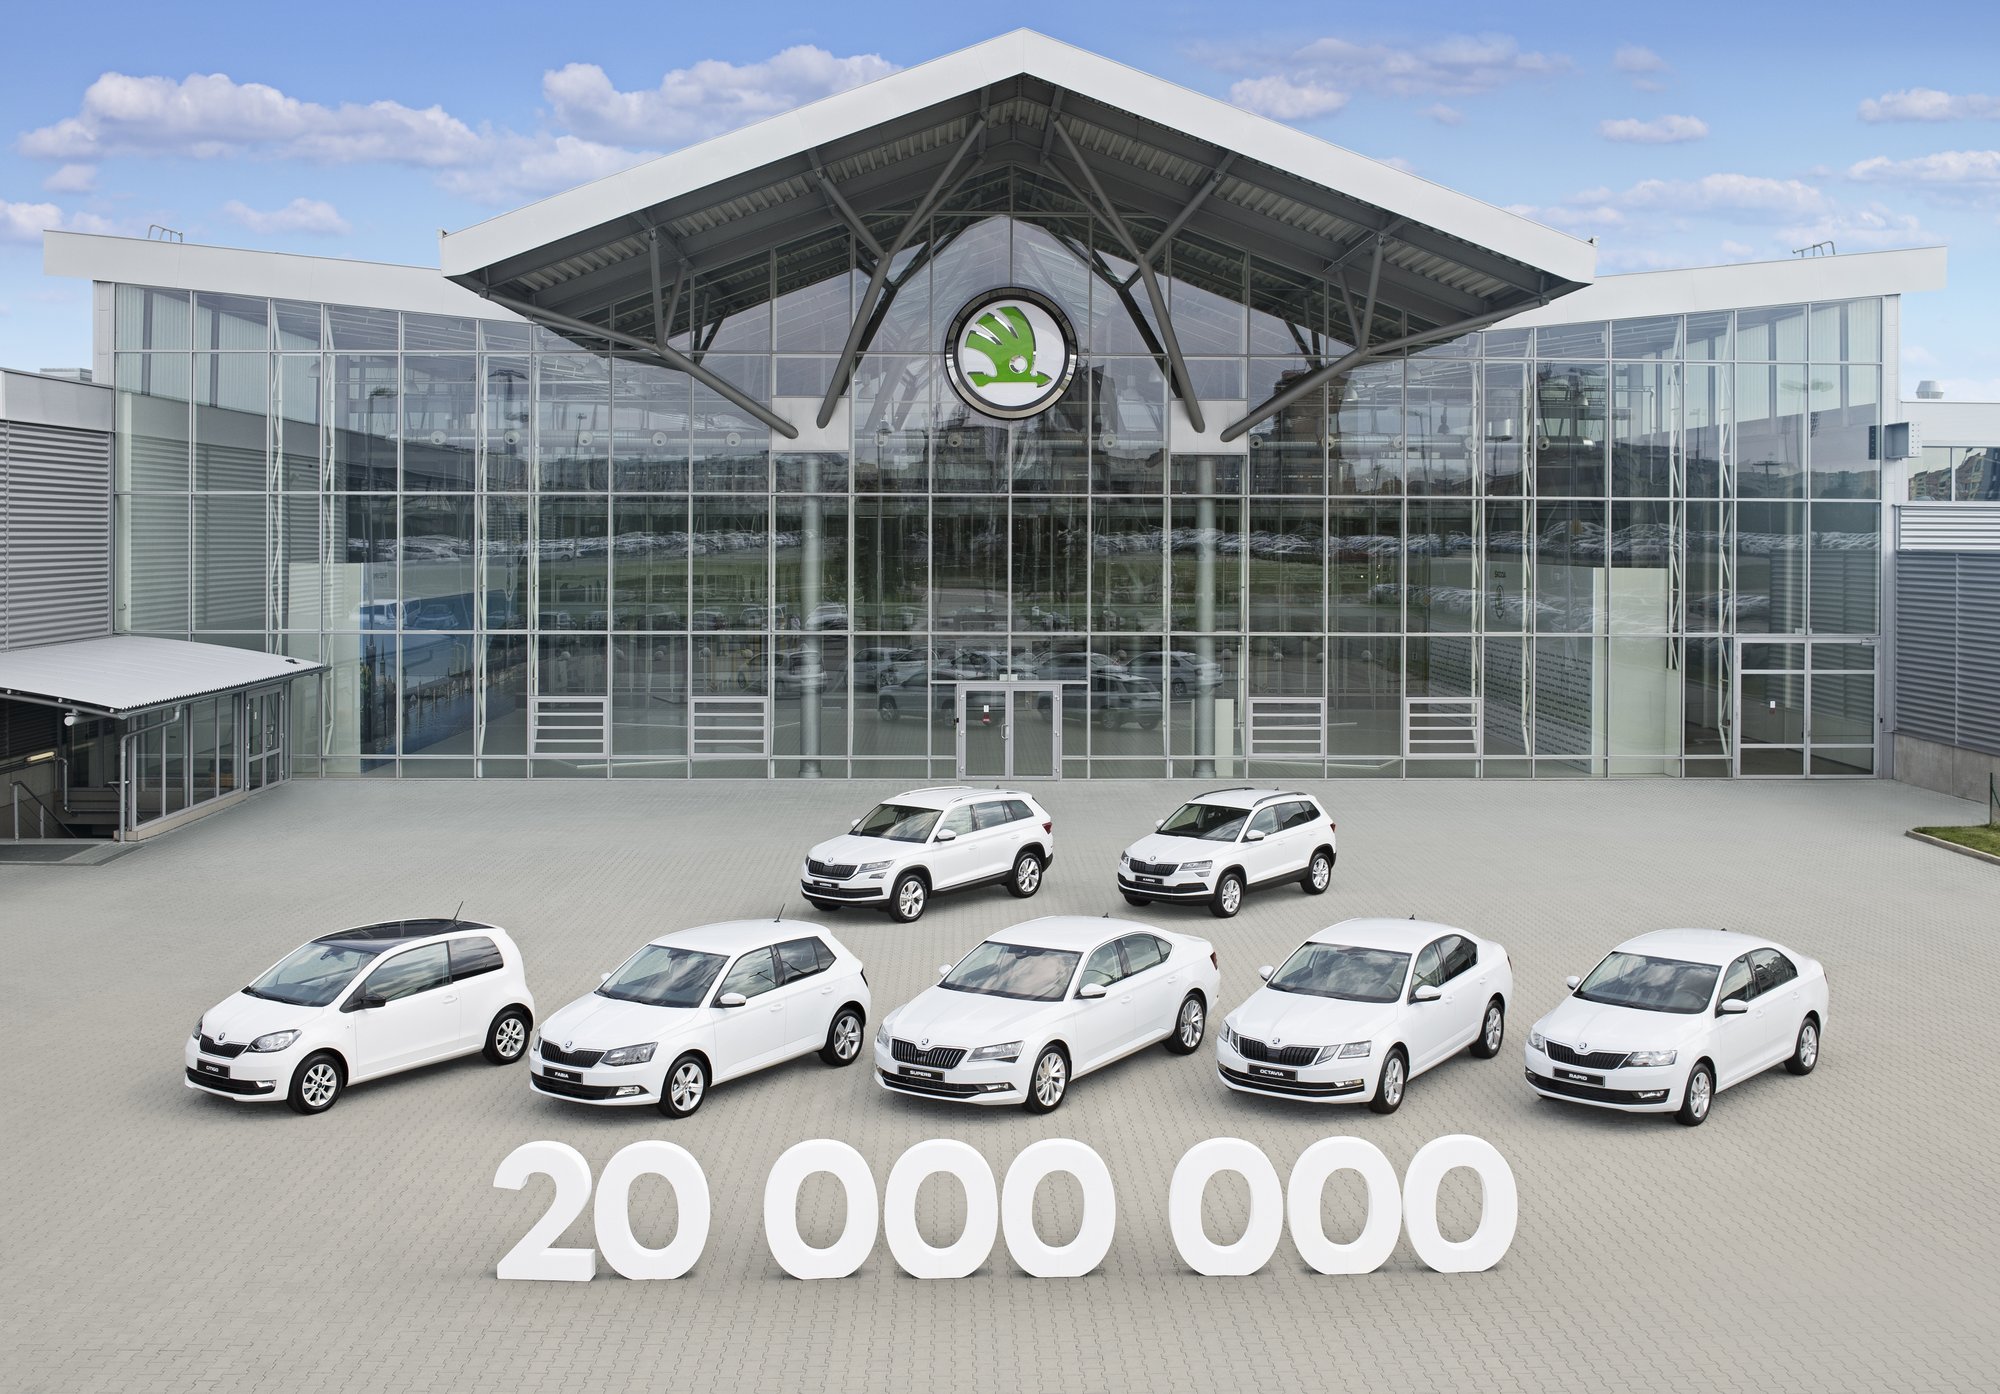 Automobilka Škoda Auto oslavuje významné jubileum, na kontě už má 20 000 000 vyrobených automobilů